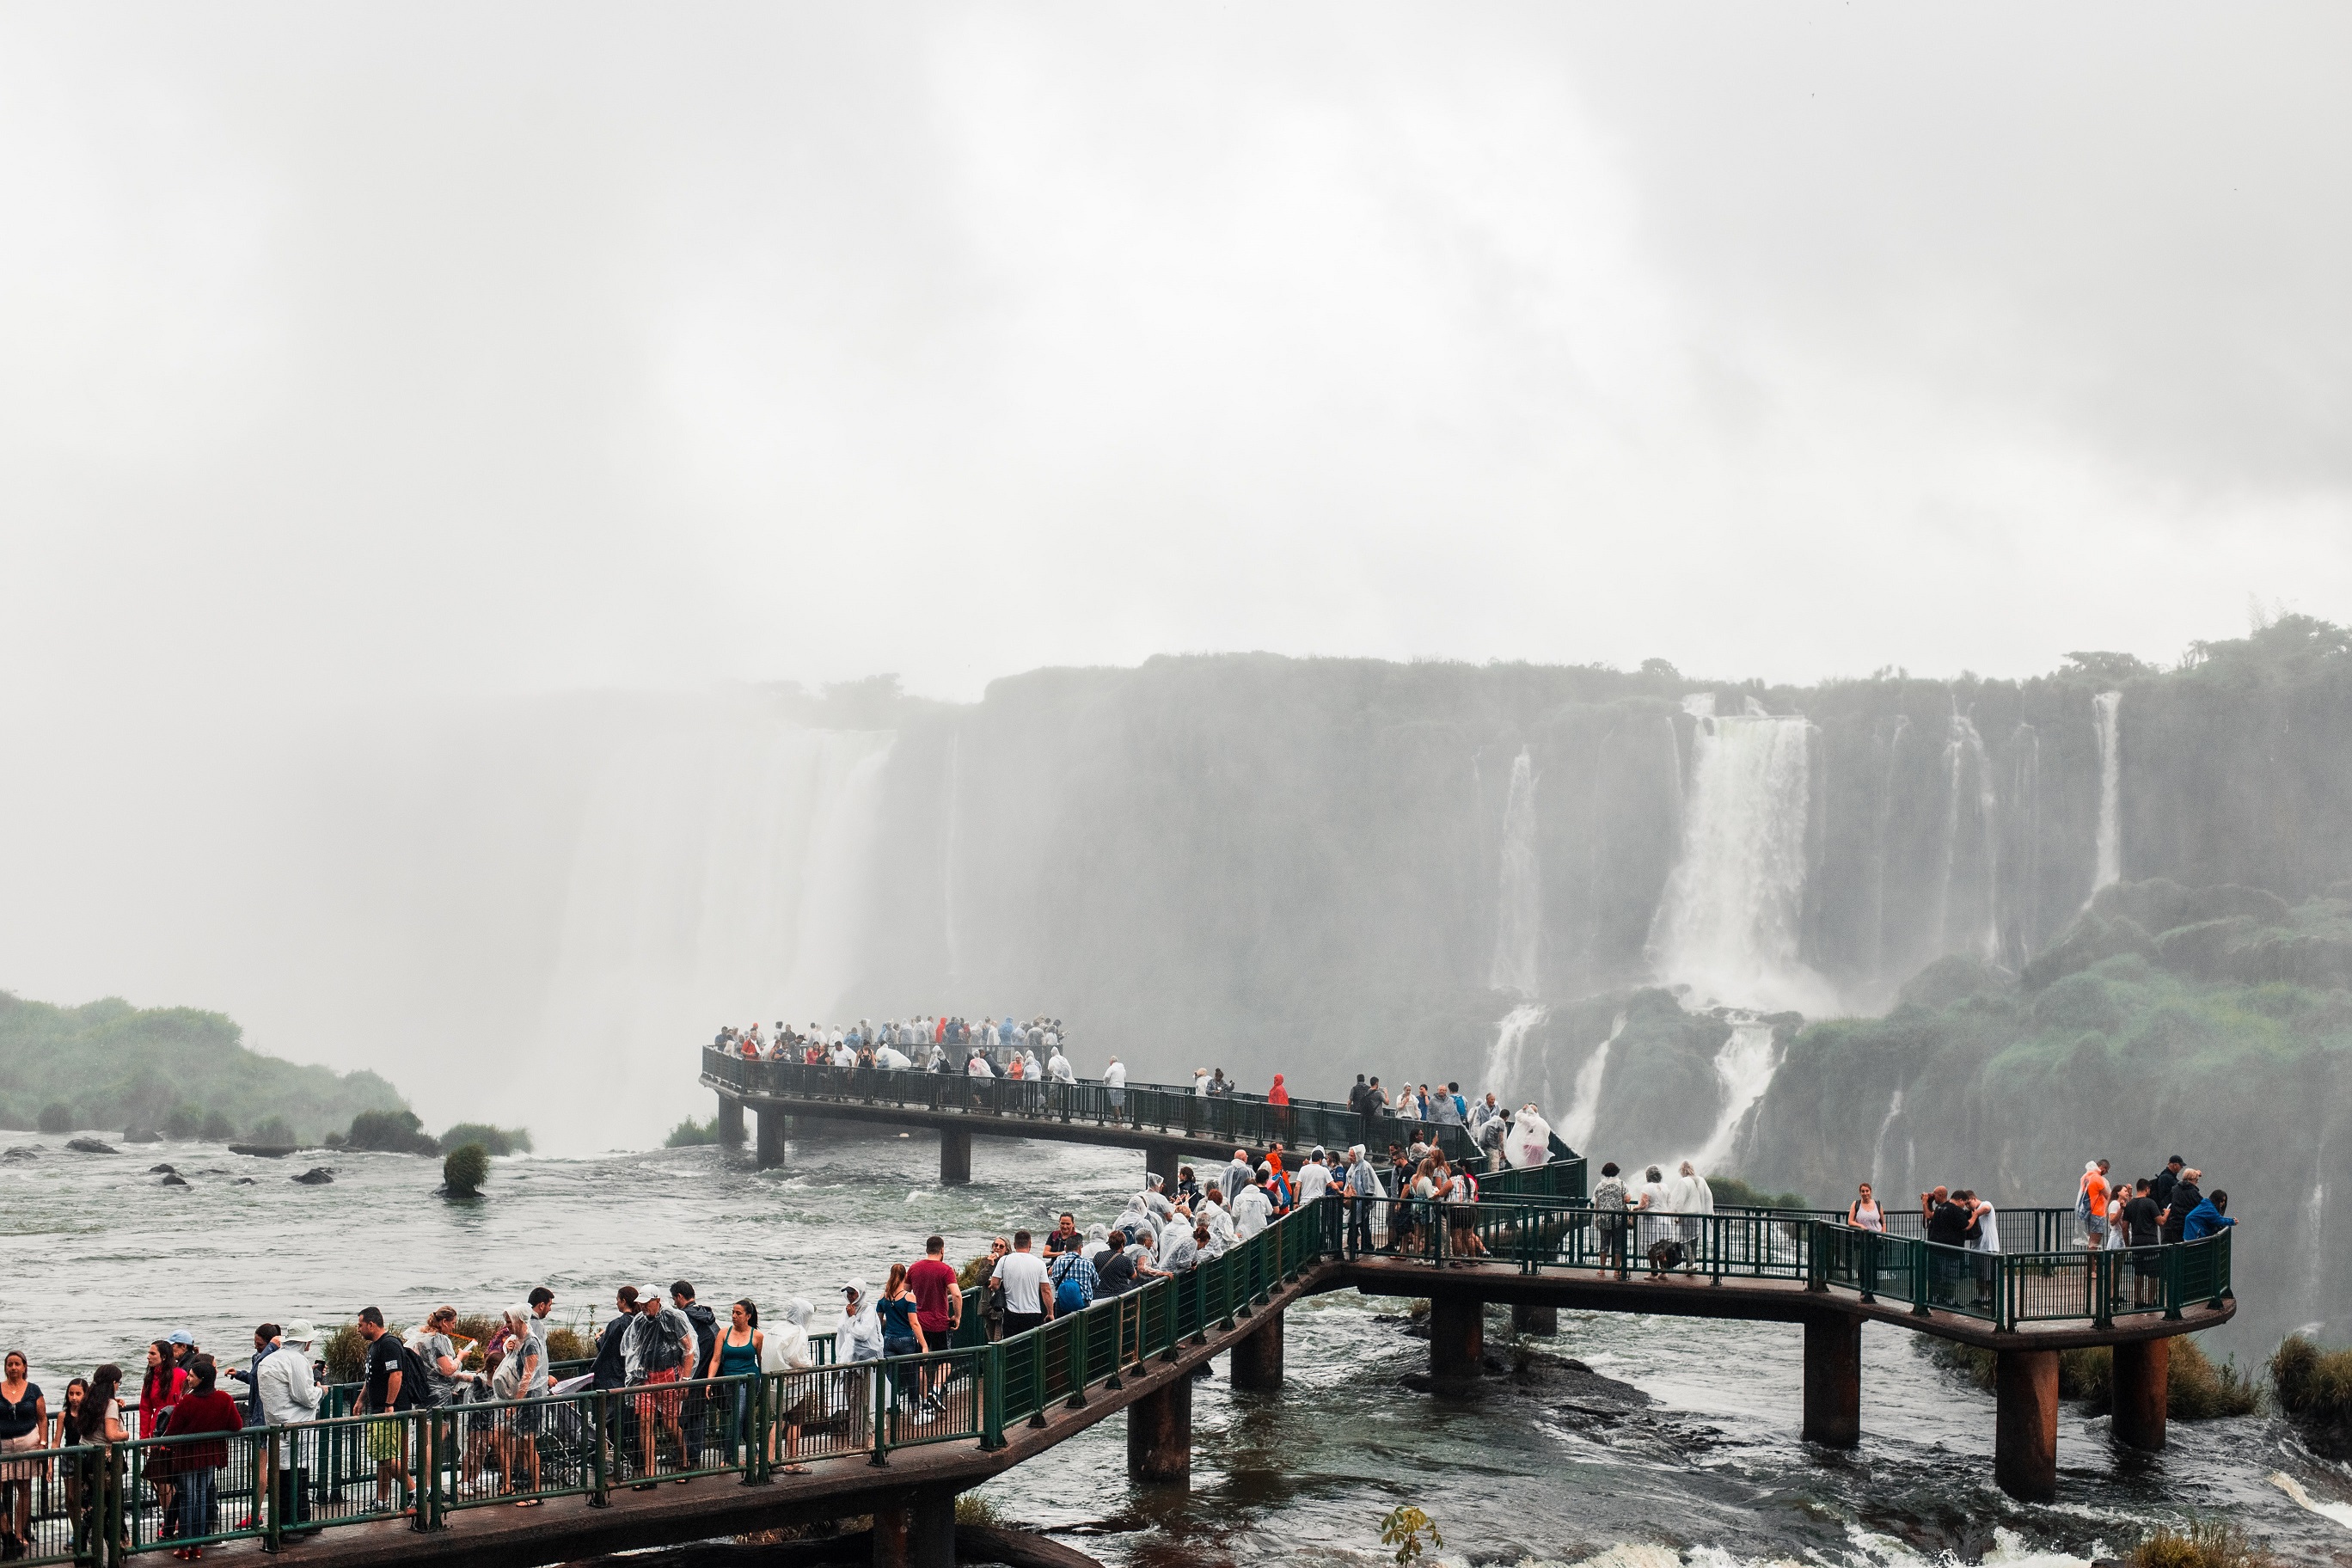 Day 06: Iguaçu